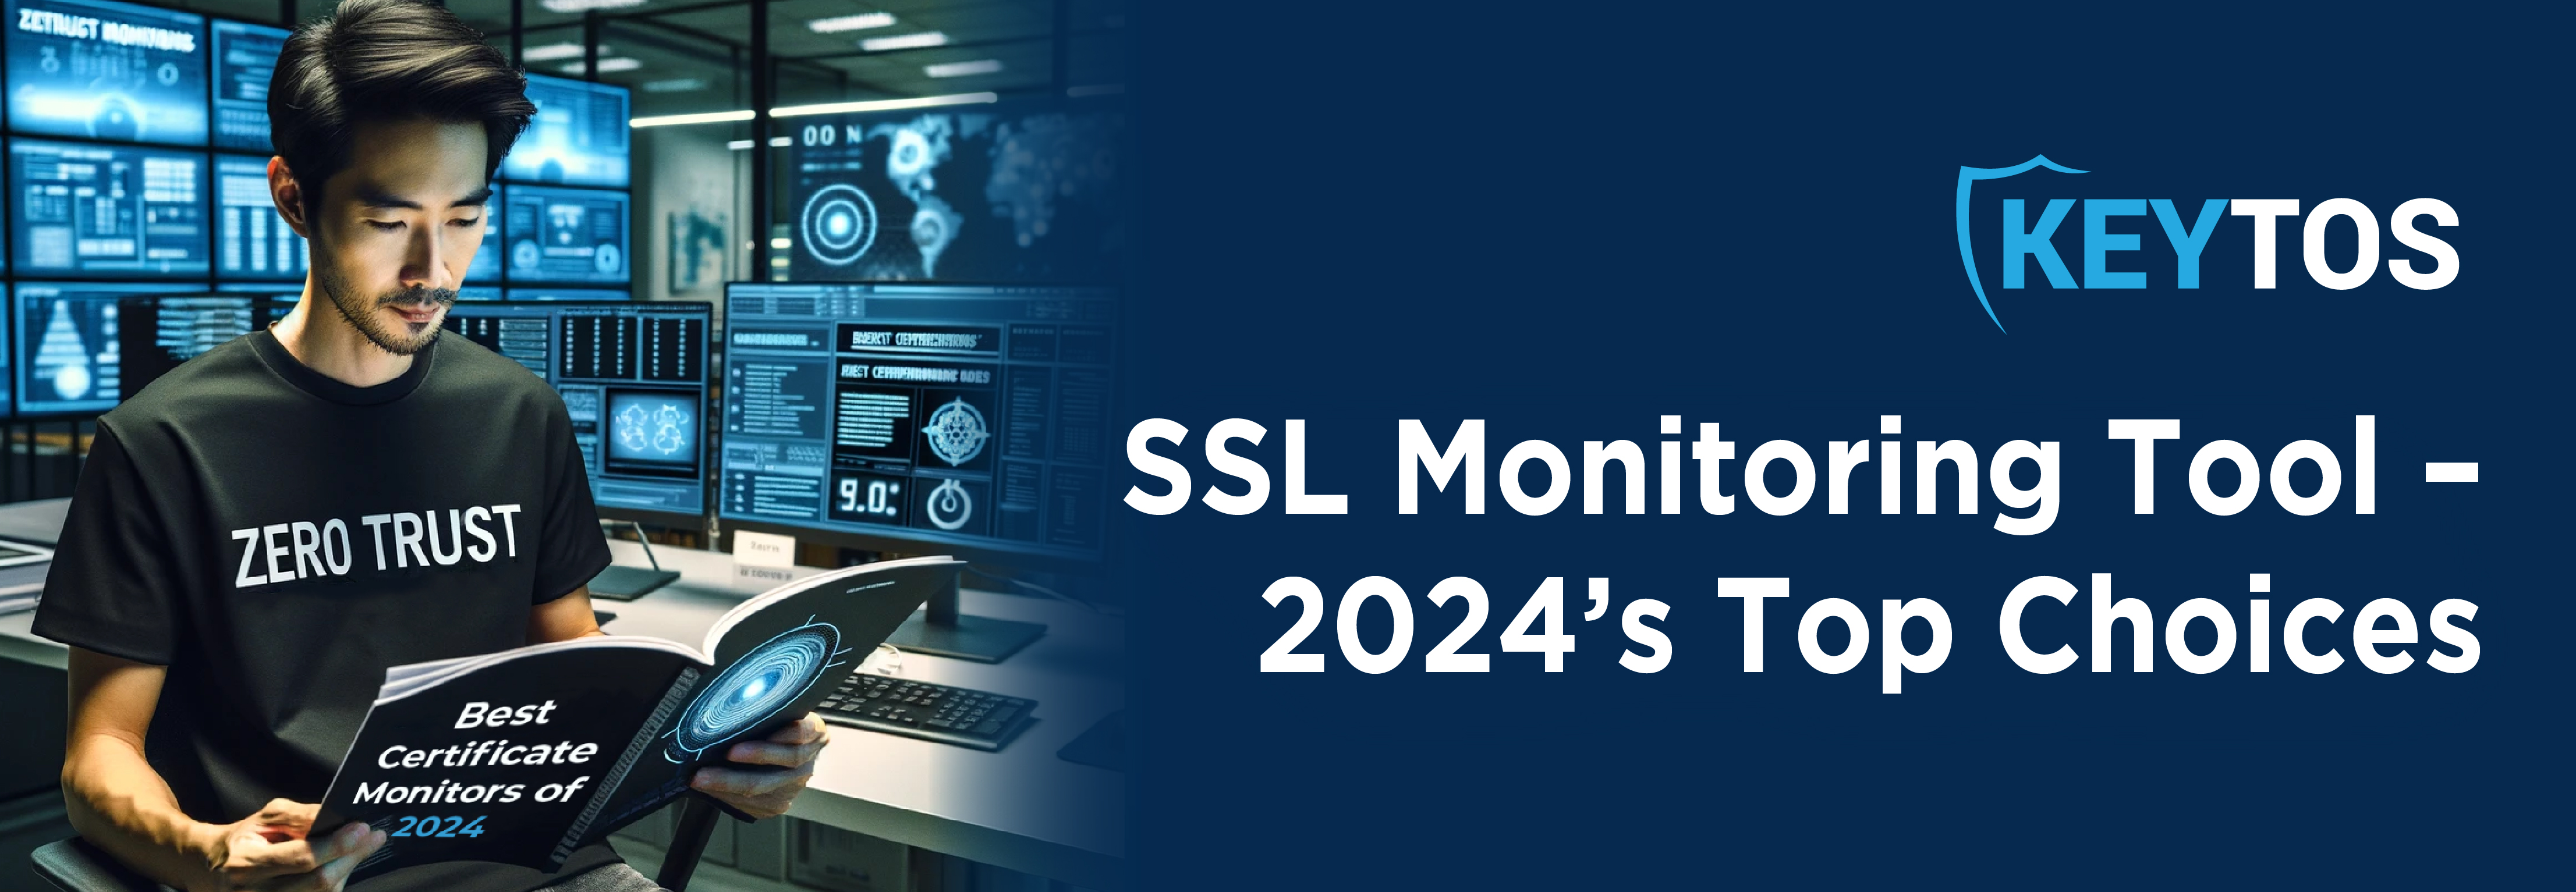 Las mejores herramientas de monitoreo de certificados SSL que puedes comprar